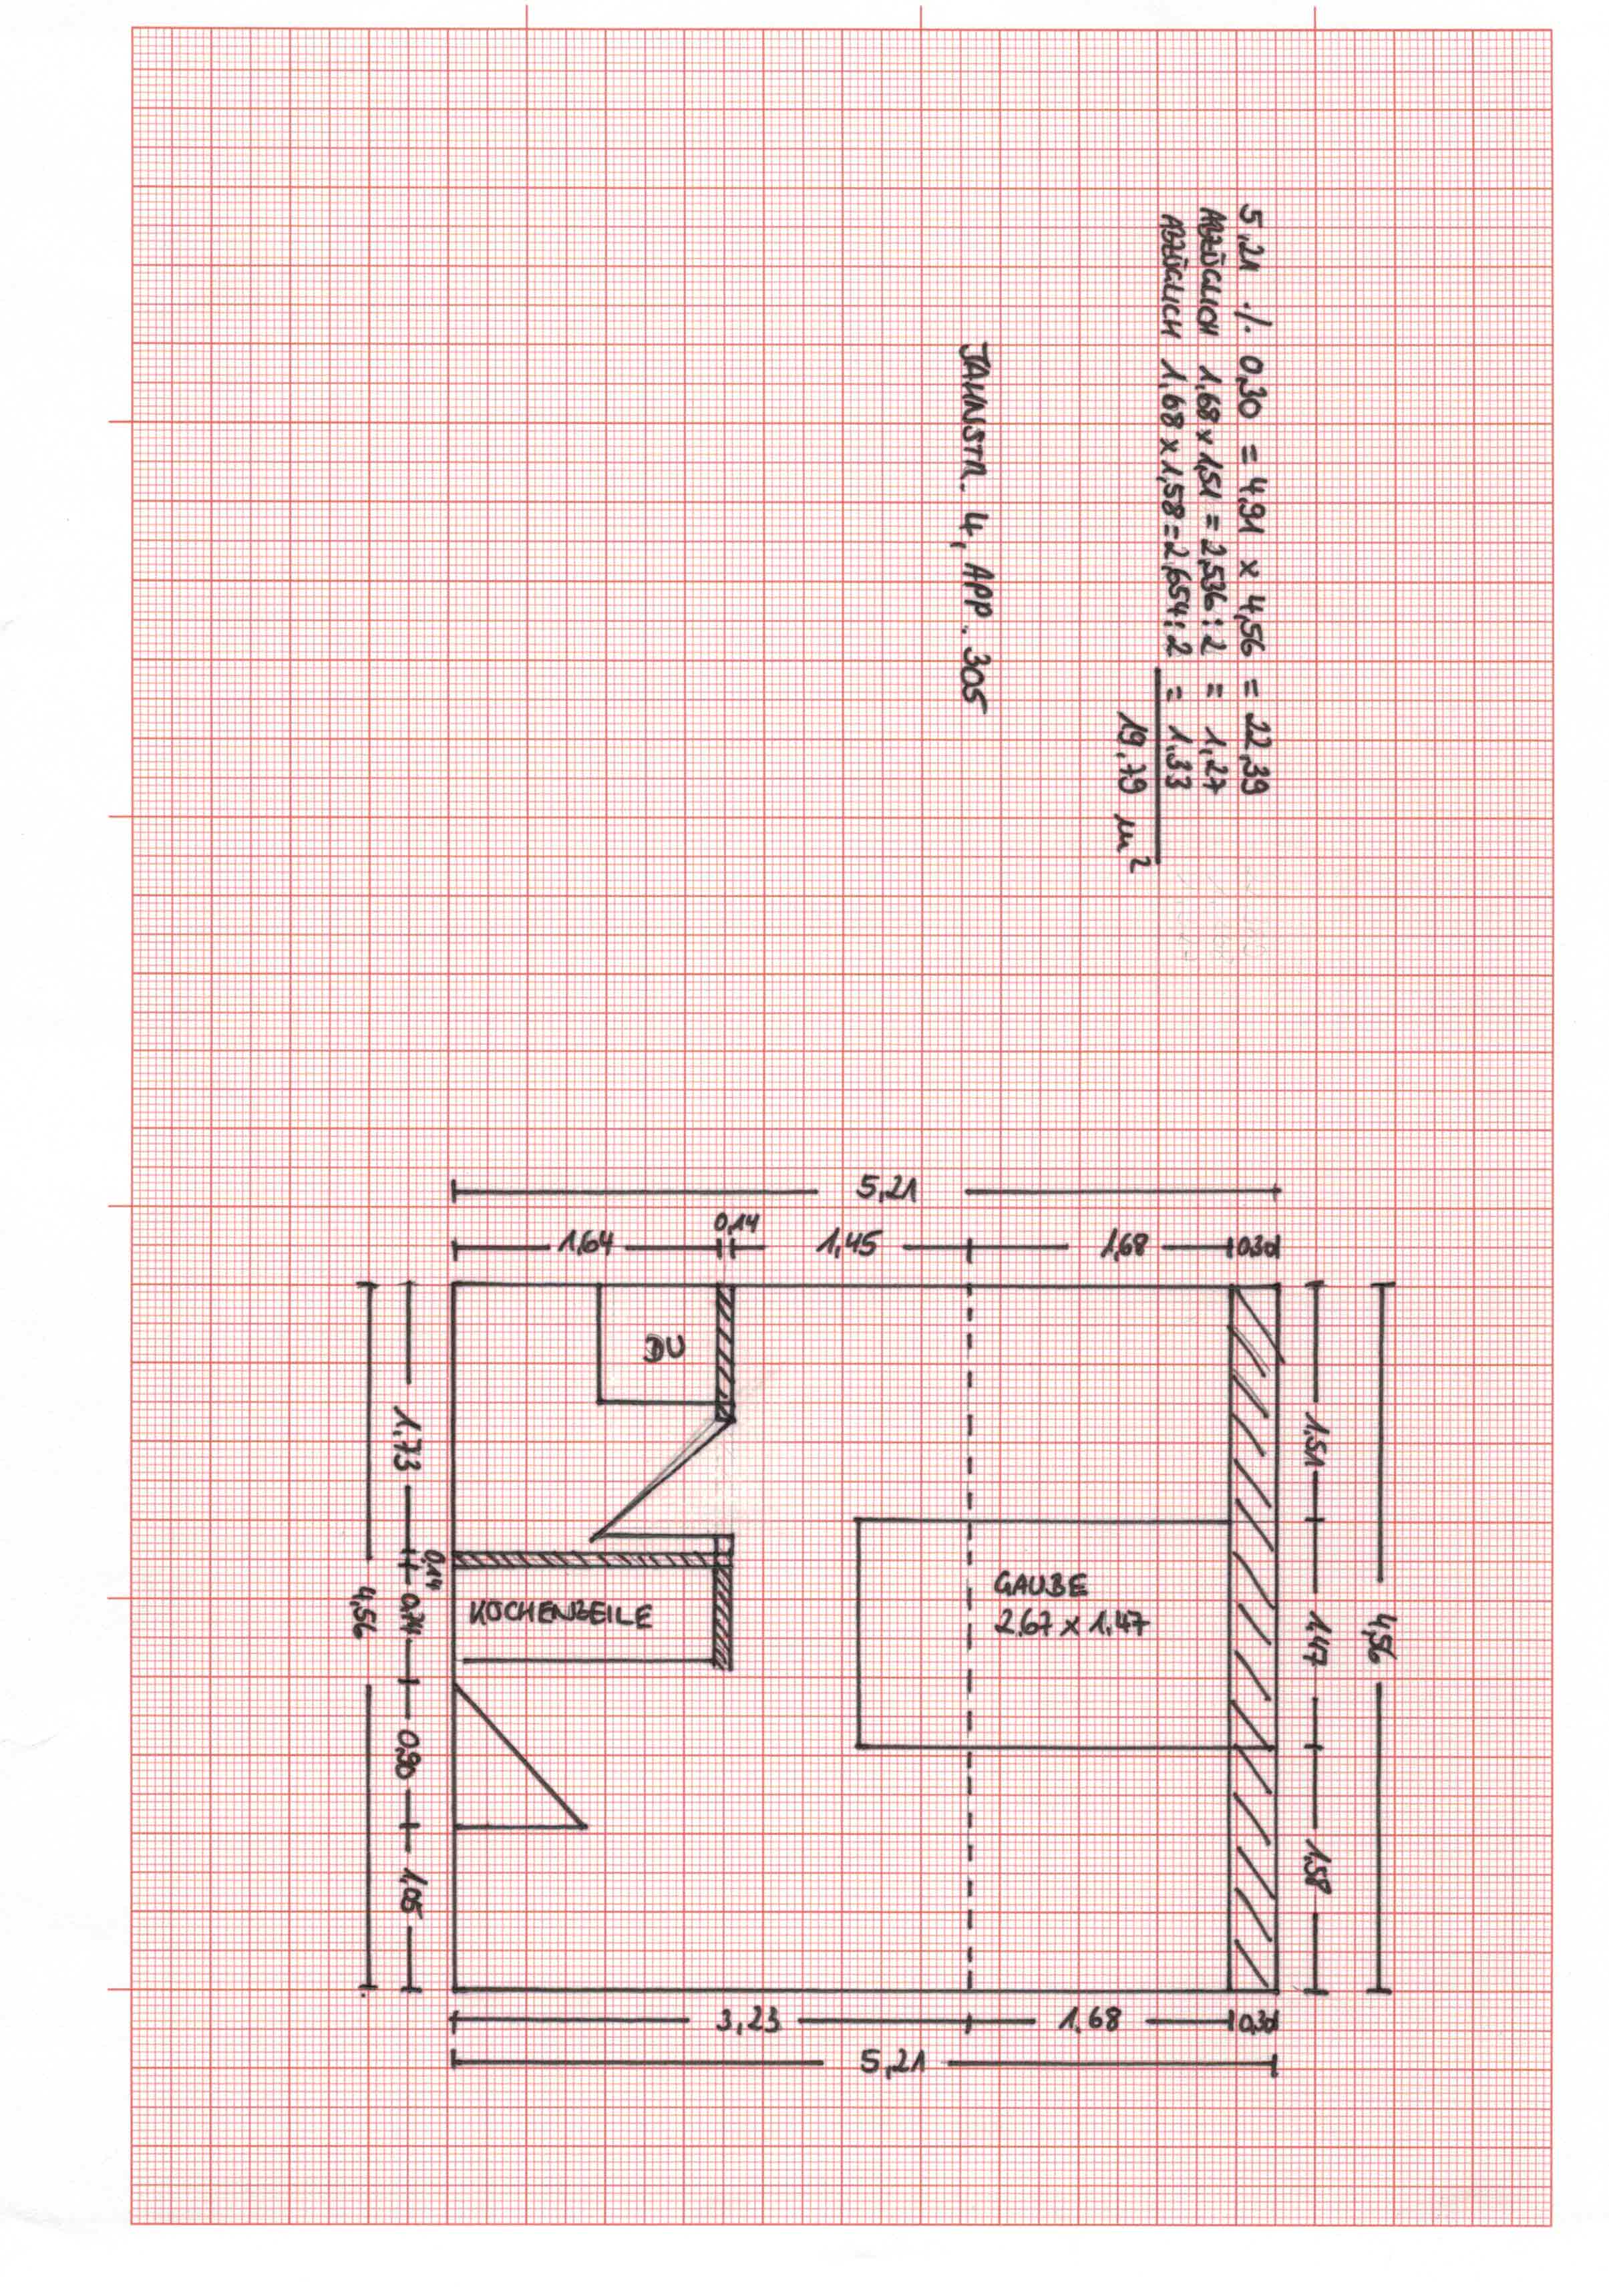 1-Zimmer-Appartment (Ref Jahn4, App. 305)